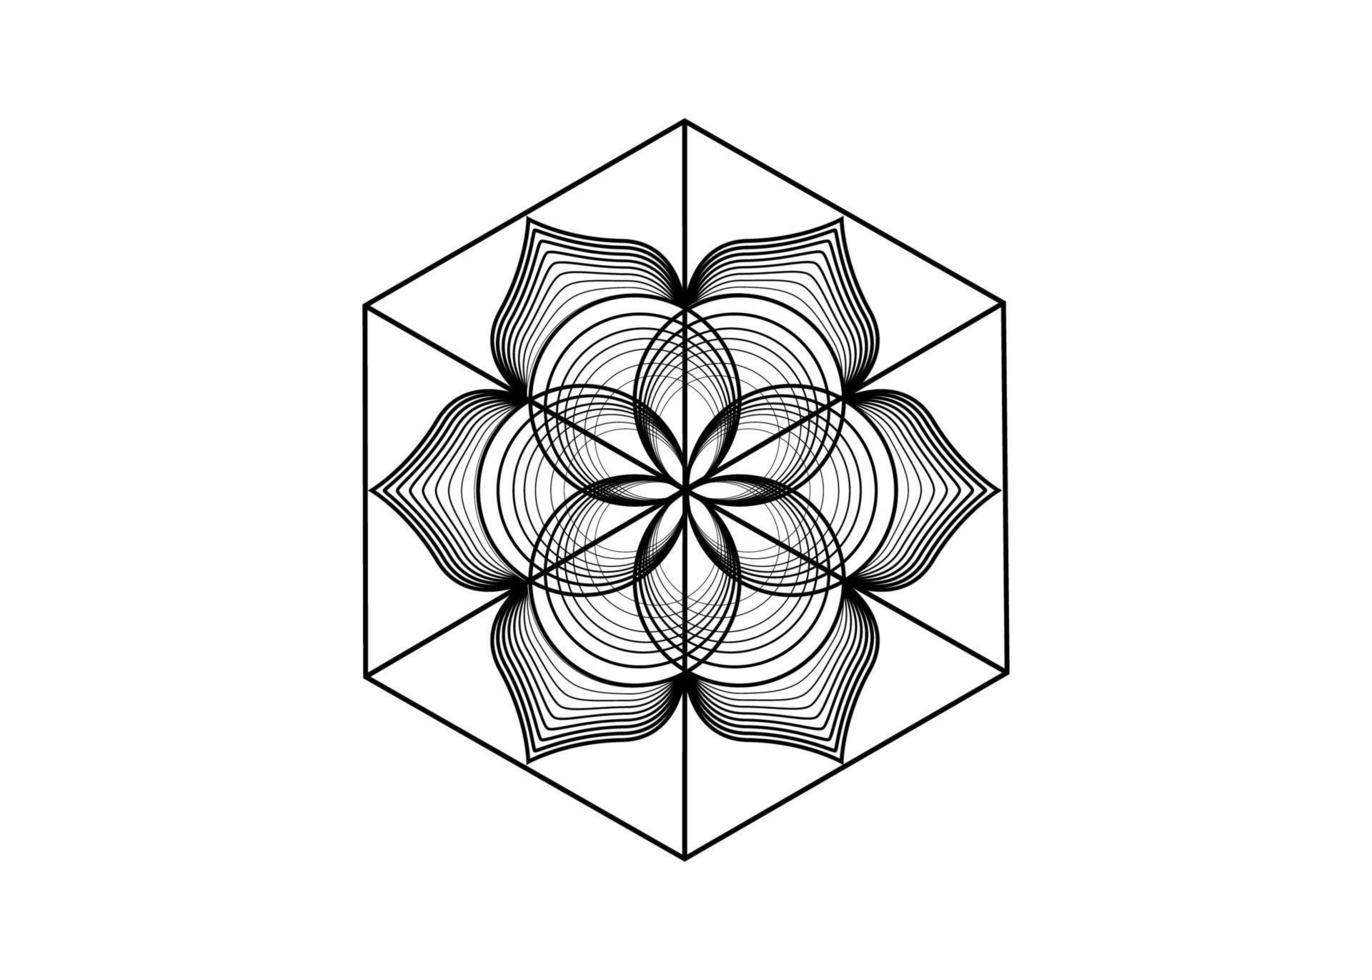 Samen des Lebenssymbols heilige Geometrie. Logo-Symbol geometrisches mystisches Mandala der Alchemie esoterische Blume des Lebens. Vektor schwarze Linien, Yantra, Chakra oder Lotus göttliches meditatives Amulett isoliert auf weiß